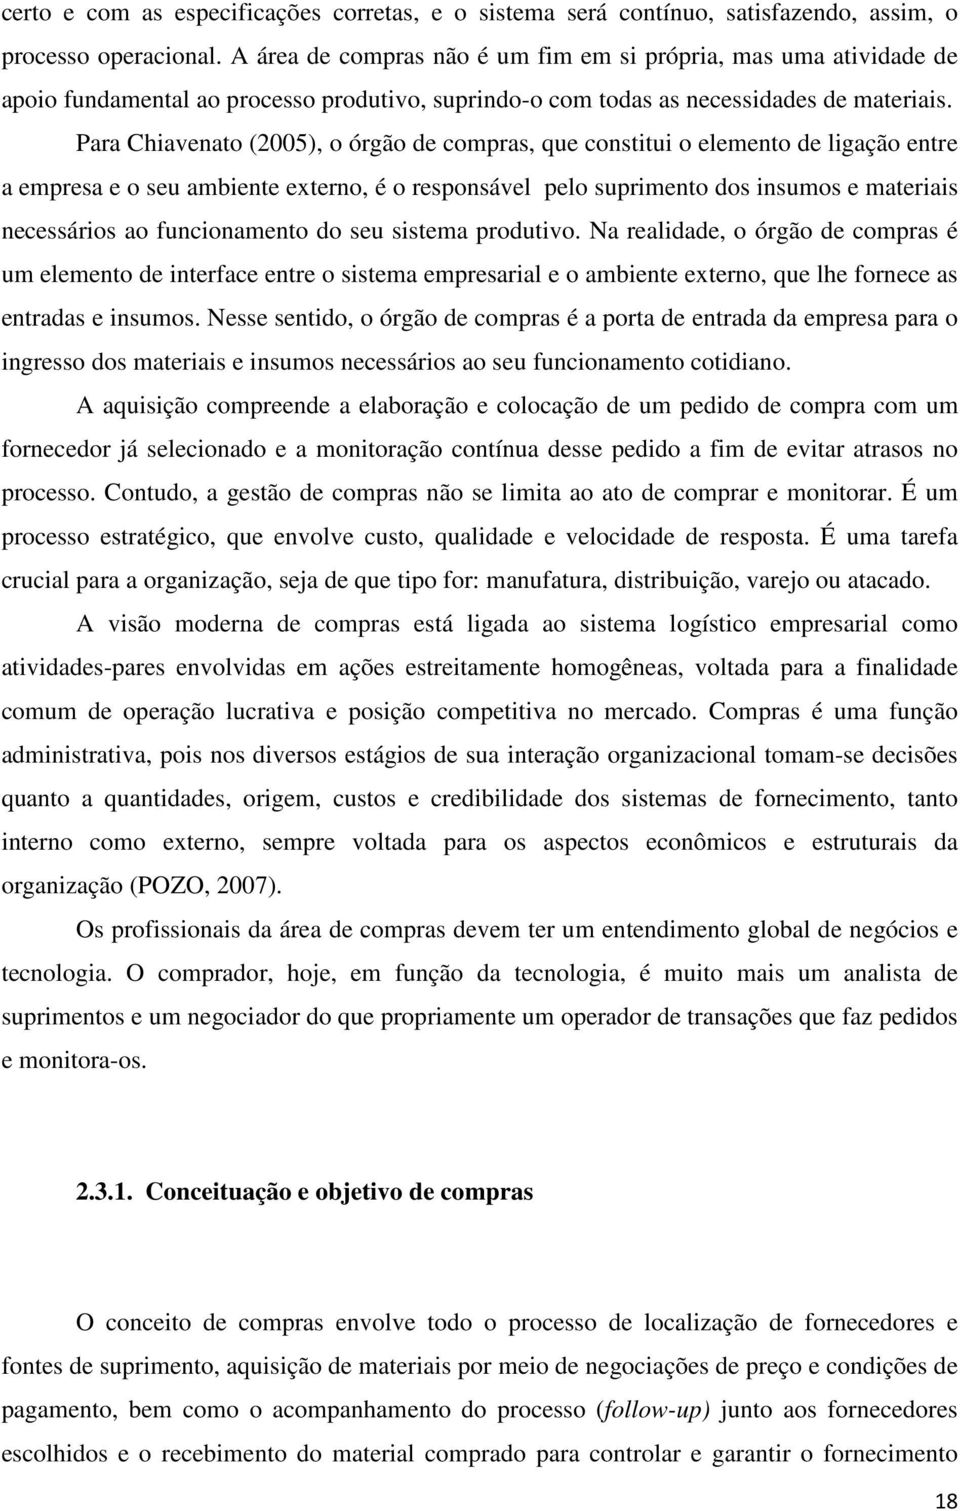 Para Chiavenato (2005), o órgão de compras, que constitui o elemento de ligação entre a empresa e o seu ambiente externo, é o responsável pelo suprimento dos insumos e materiais necessários ao